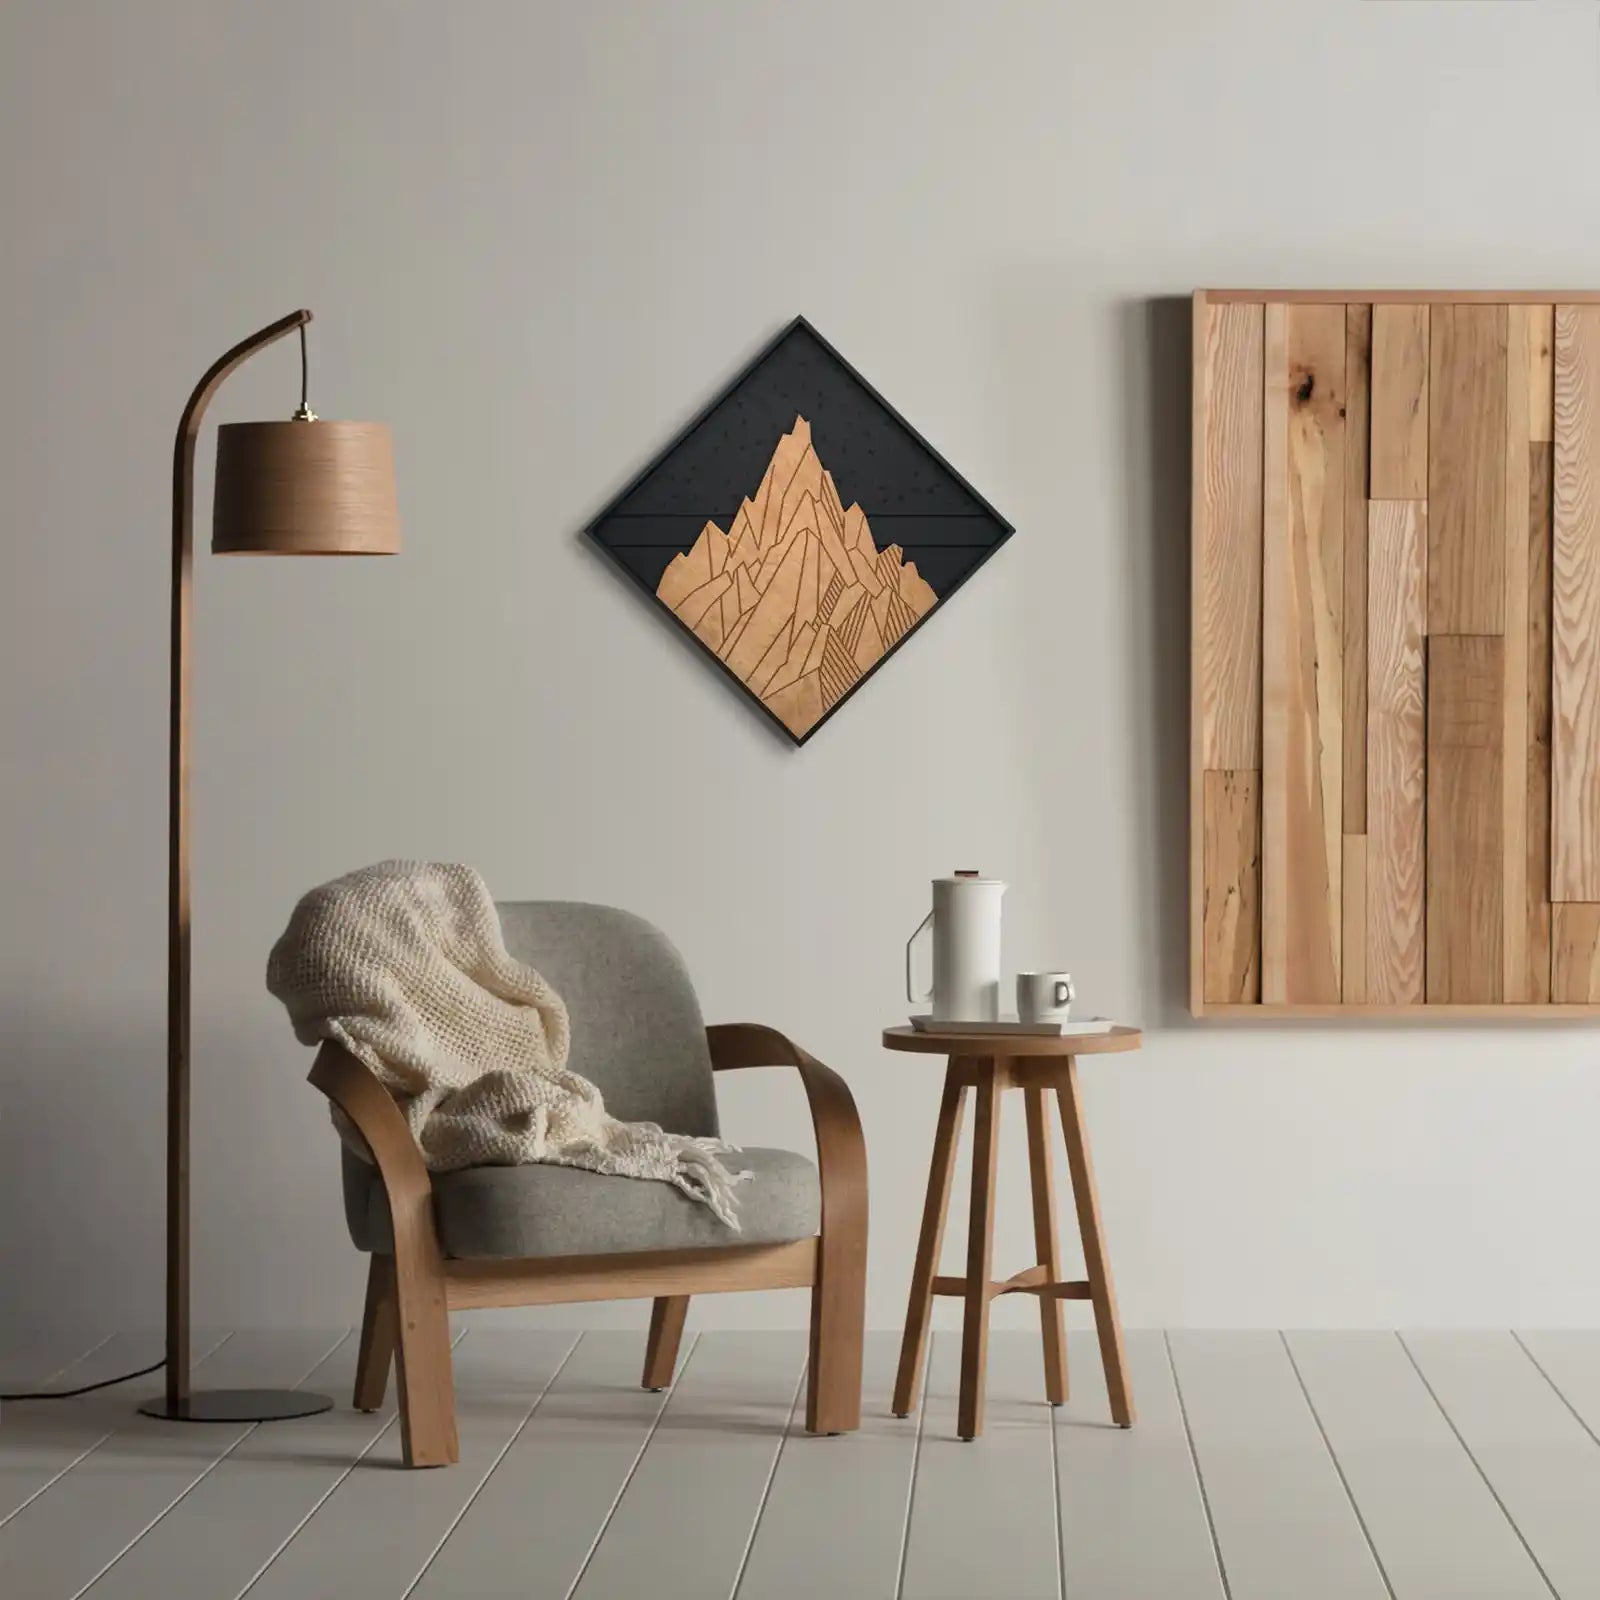 Decoración de pared de montaña, arte moderno de pared de madera en 3D, arte rústico de pared de madera, colgante de pared de madera, regalo de inauguración de la casa, producto con descuento, regalo